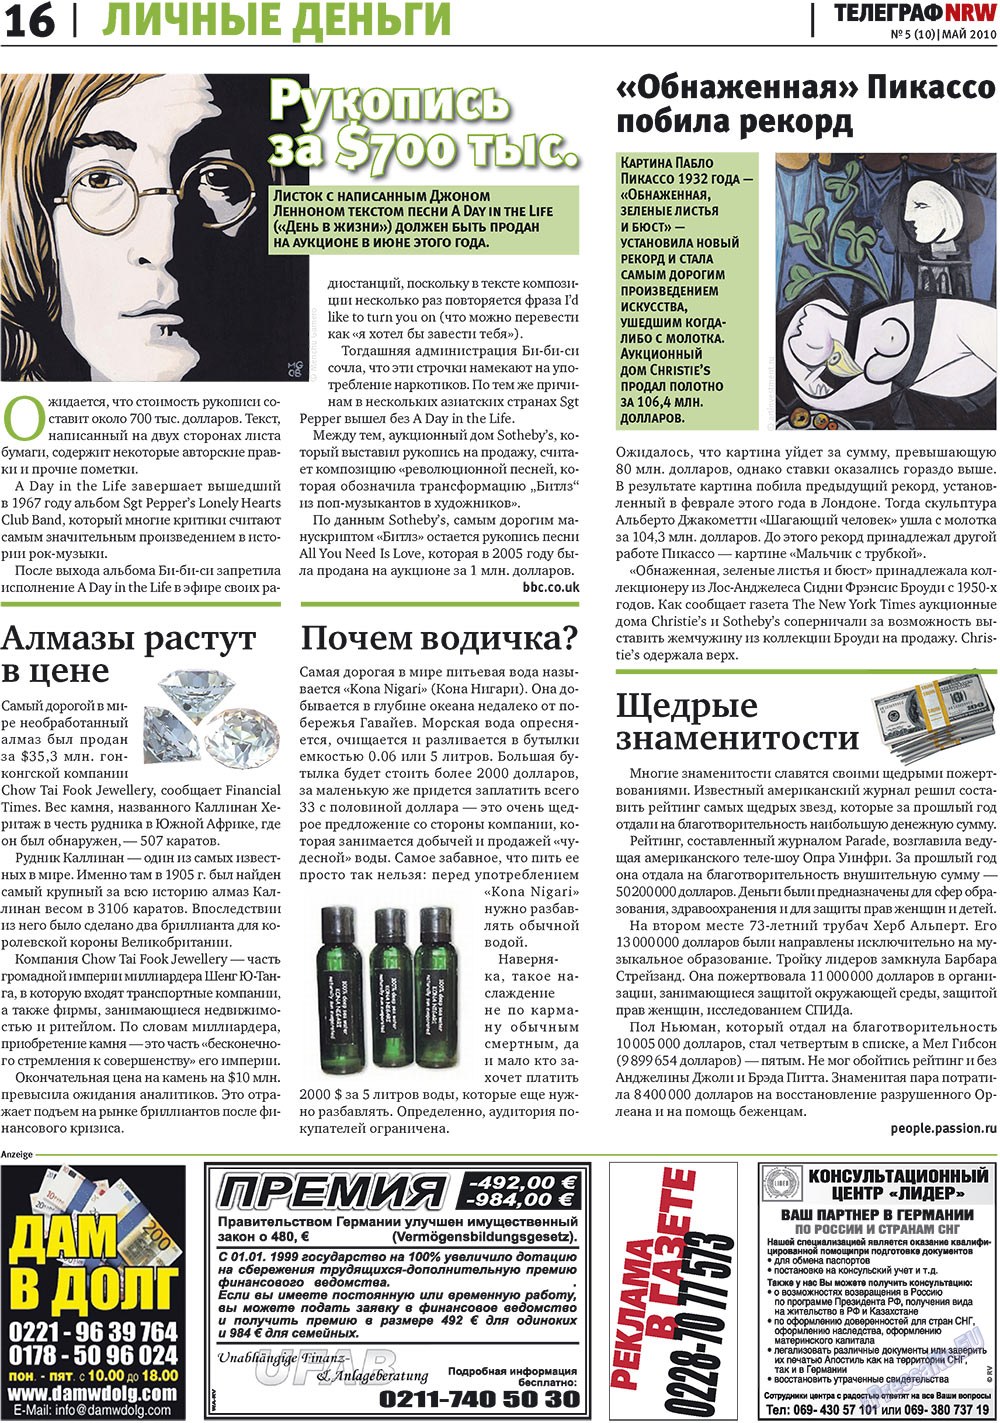 Telegraf NRW (Zeitung). 2010 Jahr, Ausgabe 5, Seite 16